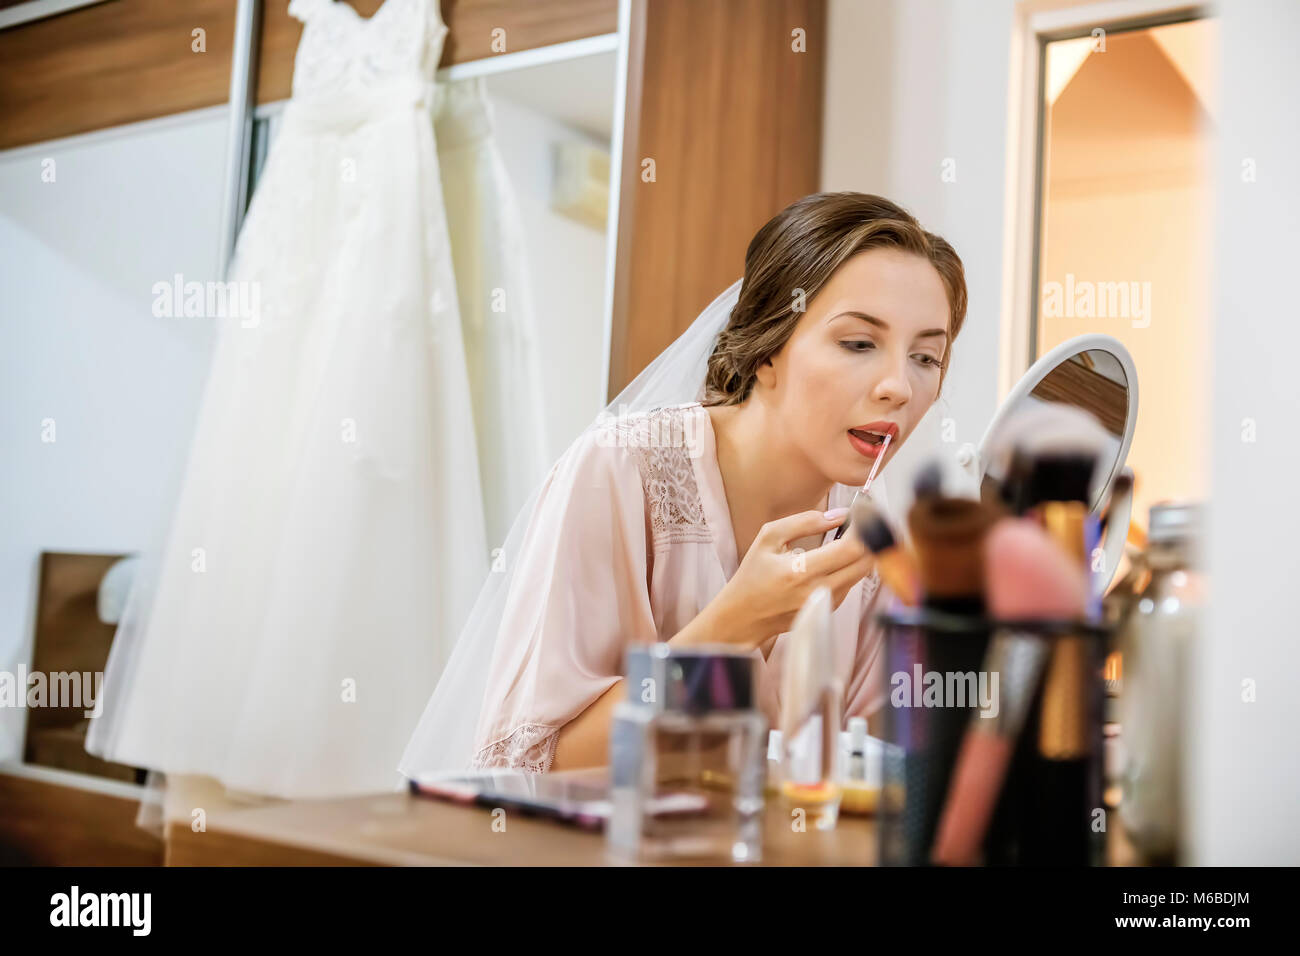 Trucco rossetto sulla sposa le labbra con la spazzola. Focus sulle labbra! Foto Stock